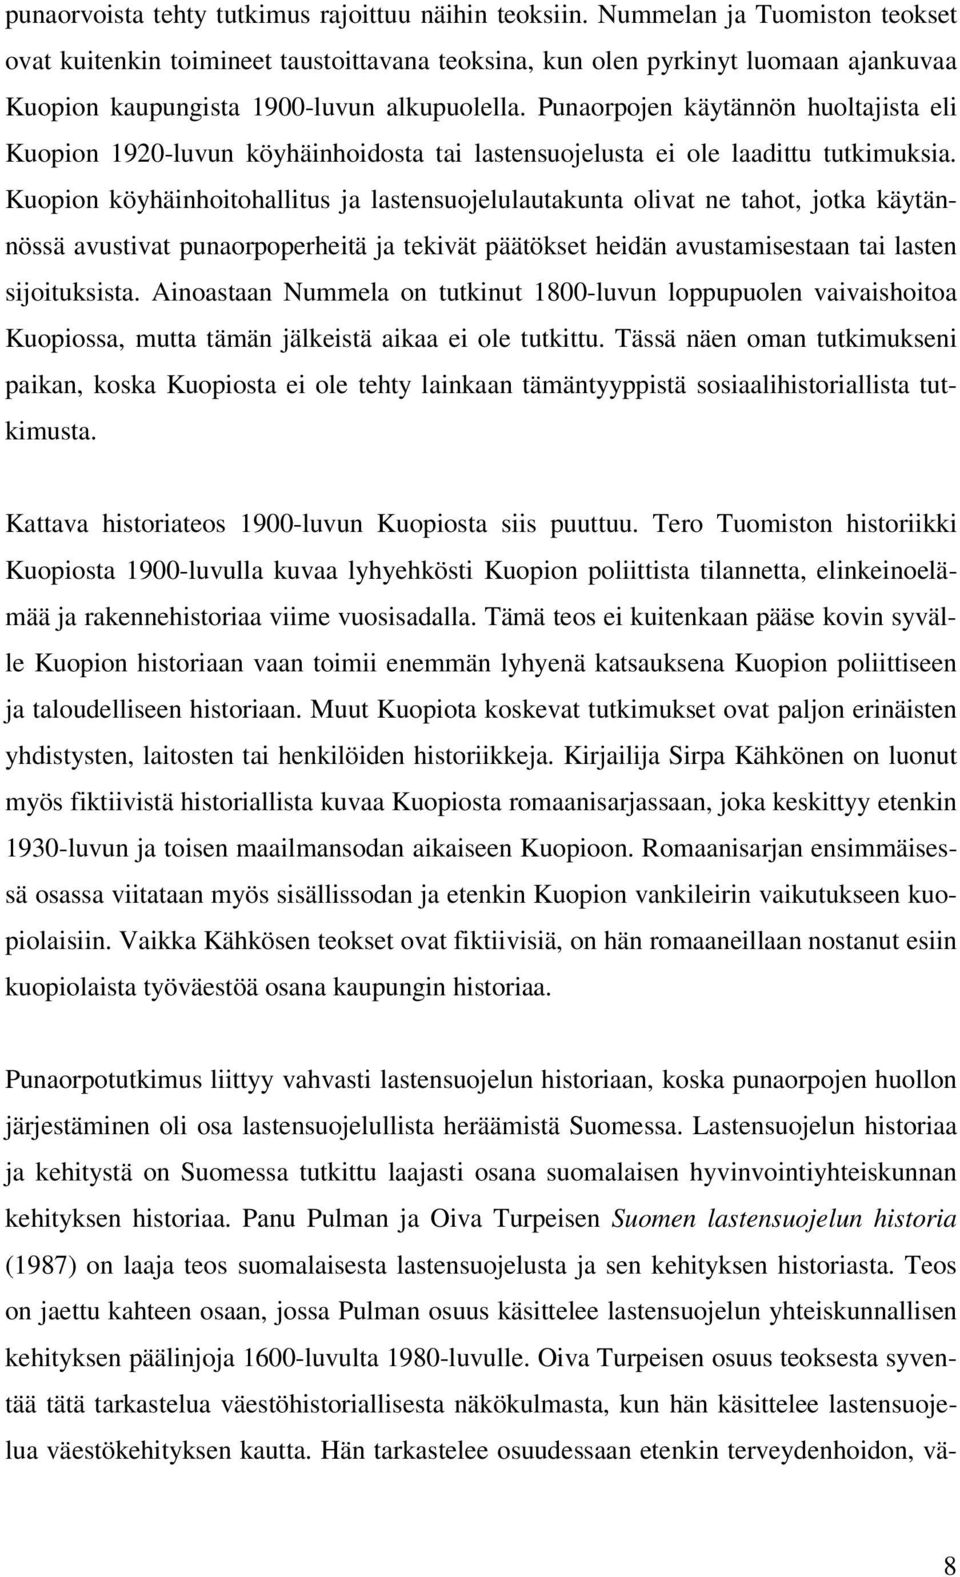 Punaorpojen käytännön huoltajista eli Kuopion 1920-luvun köyhäinhoidosta tai lastensuojelusta ei ole laadittu tutkimuksia.